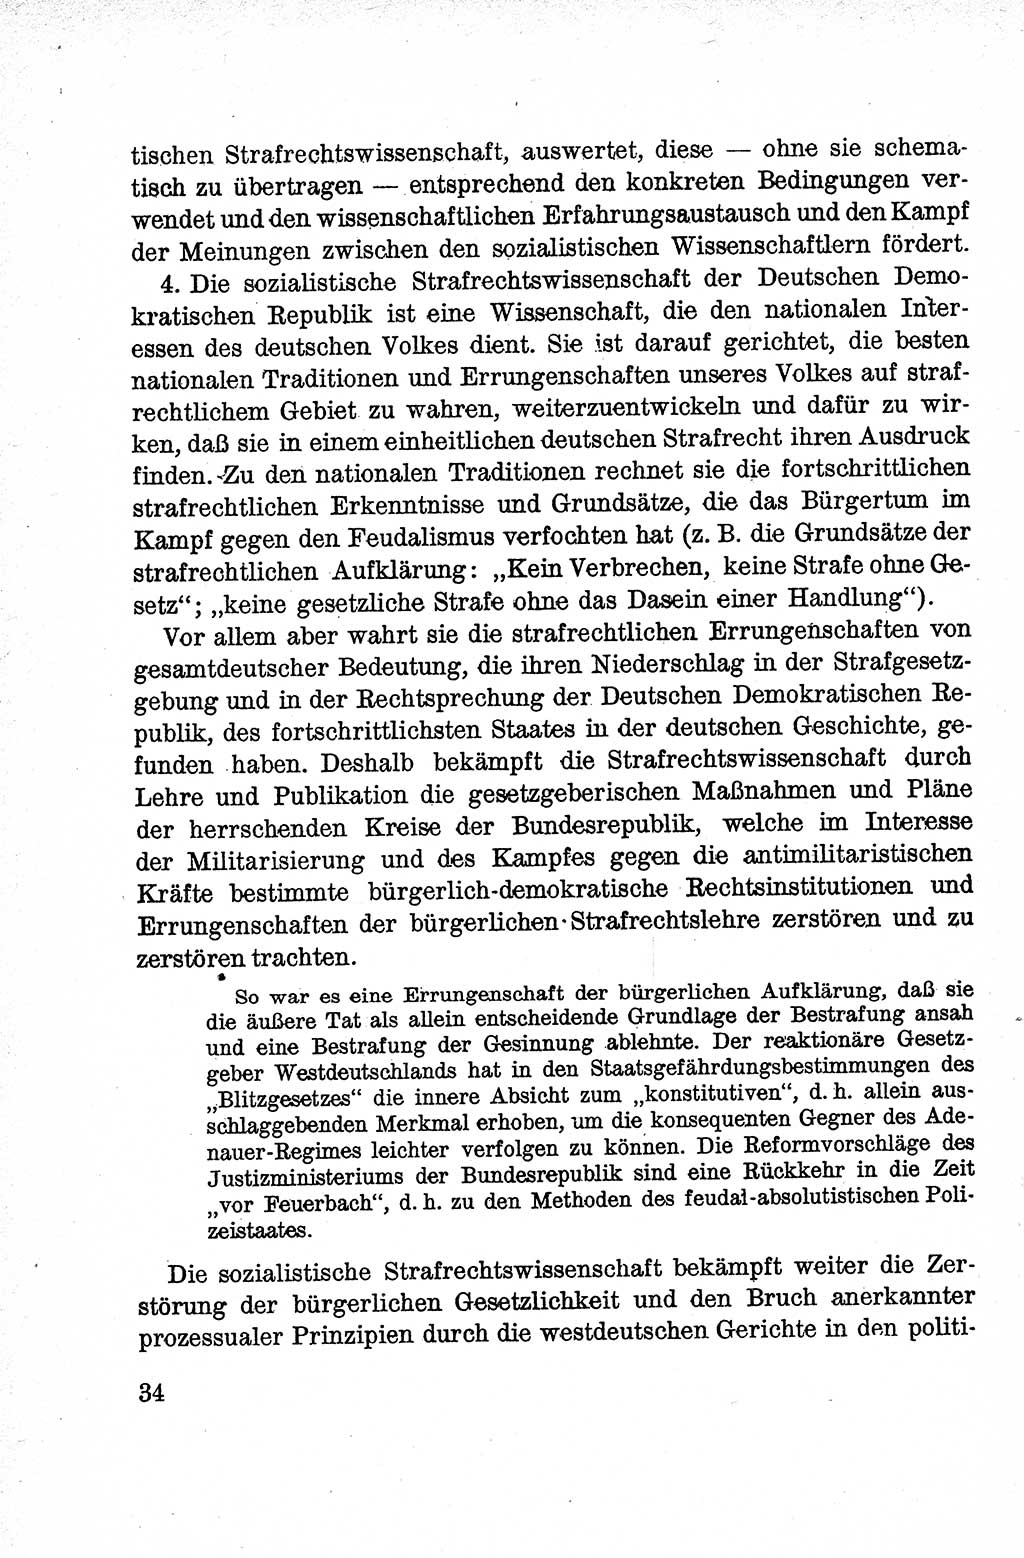 Lehrbuch des Strafrechts der Deutschen Demokratischen Republik (DDR), Allgemeiner Teil 1959, Seite 34 (Lb. Strafr. DDR AT 1959, S. 34)